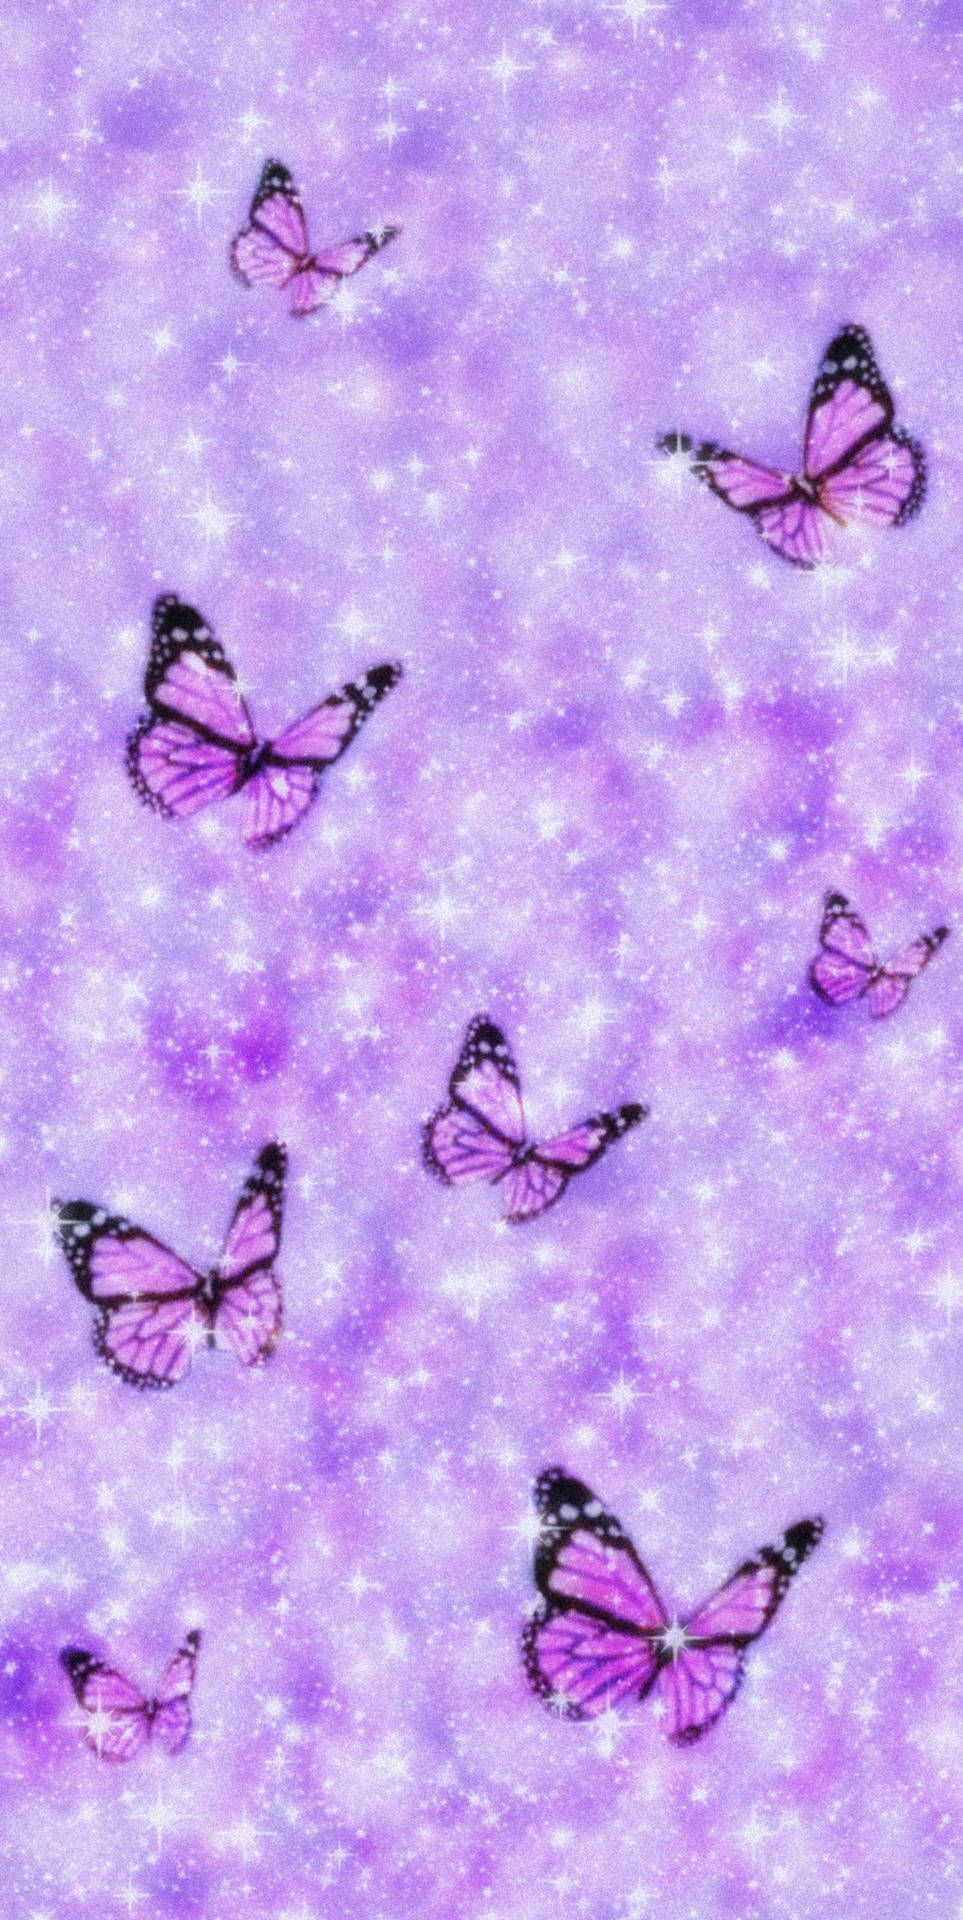 Free Purple Butterfly Phone Wallpaper Downloads, Purple Butterfly Phone Wallpaper for FREE